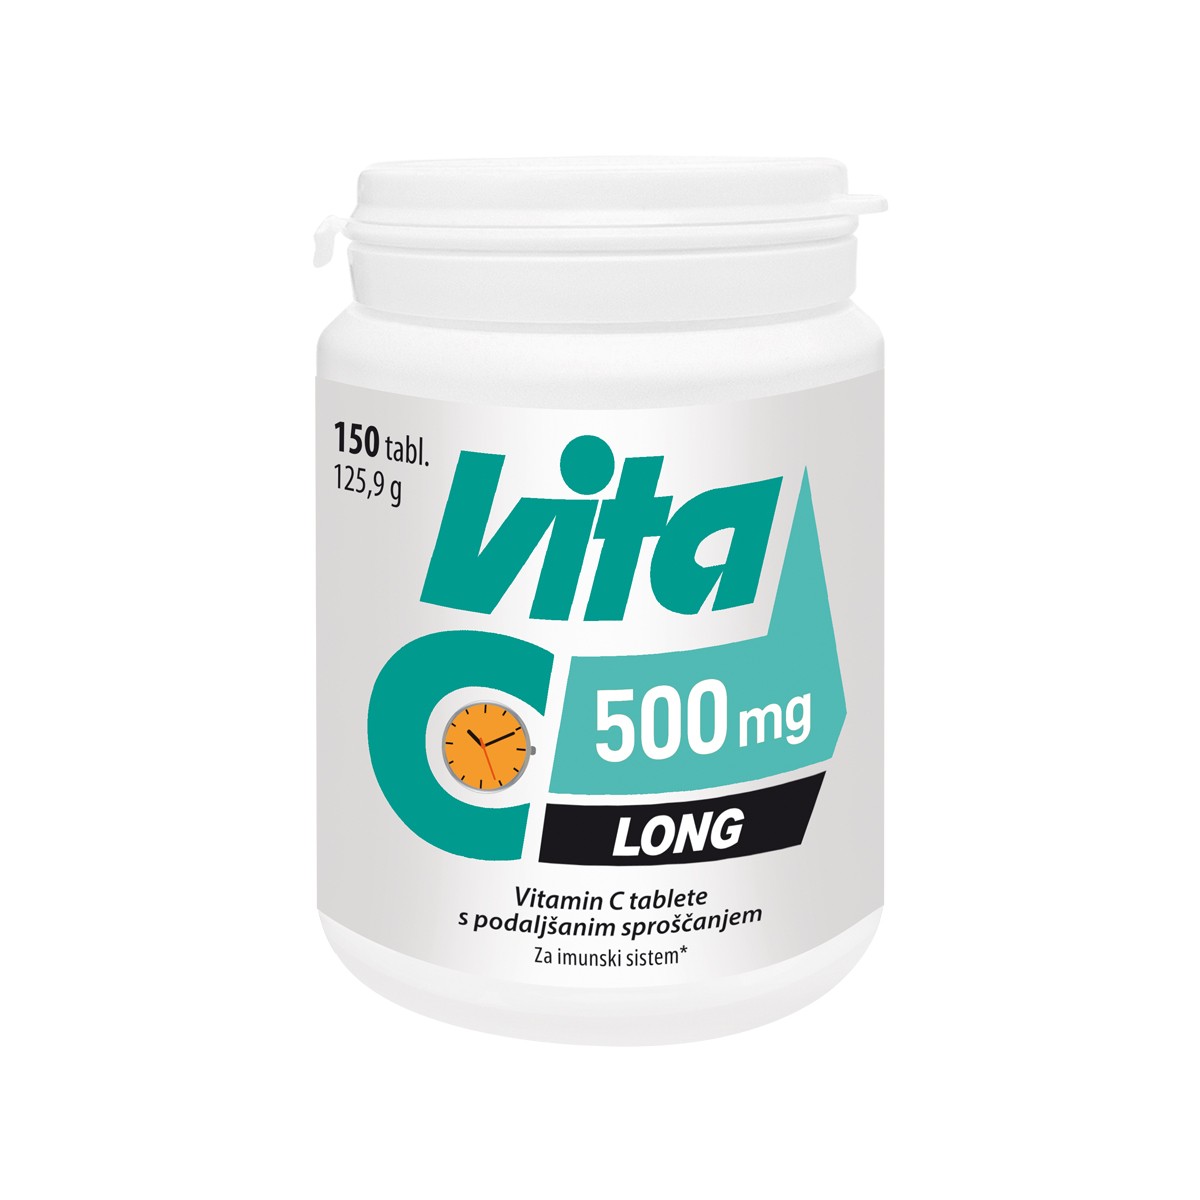 Vitabalans Vita-C 500 mg Long tablete s podaljšanim sproščanjem, 150 tablet